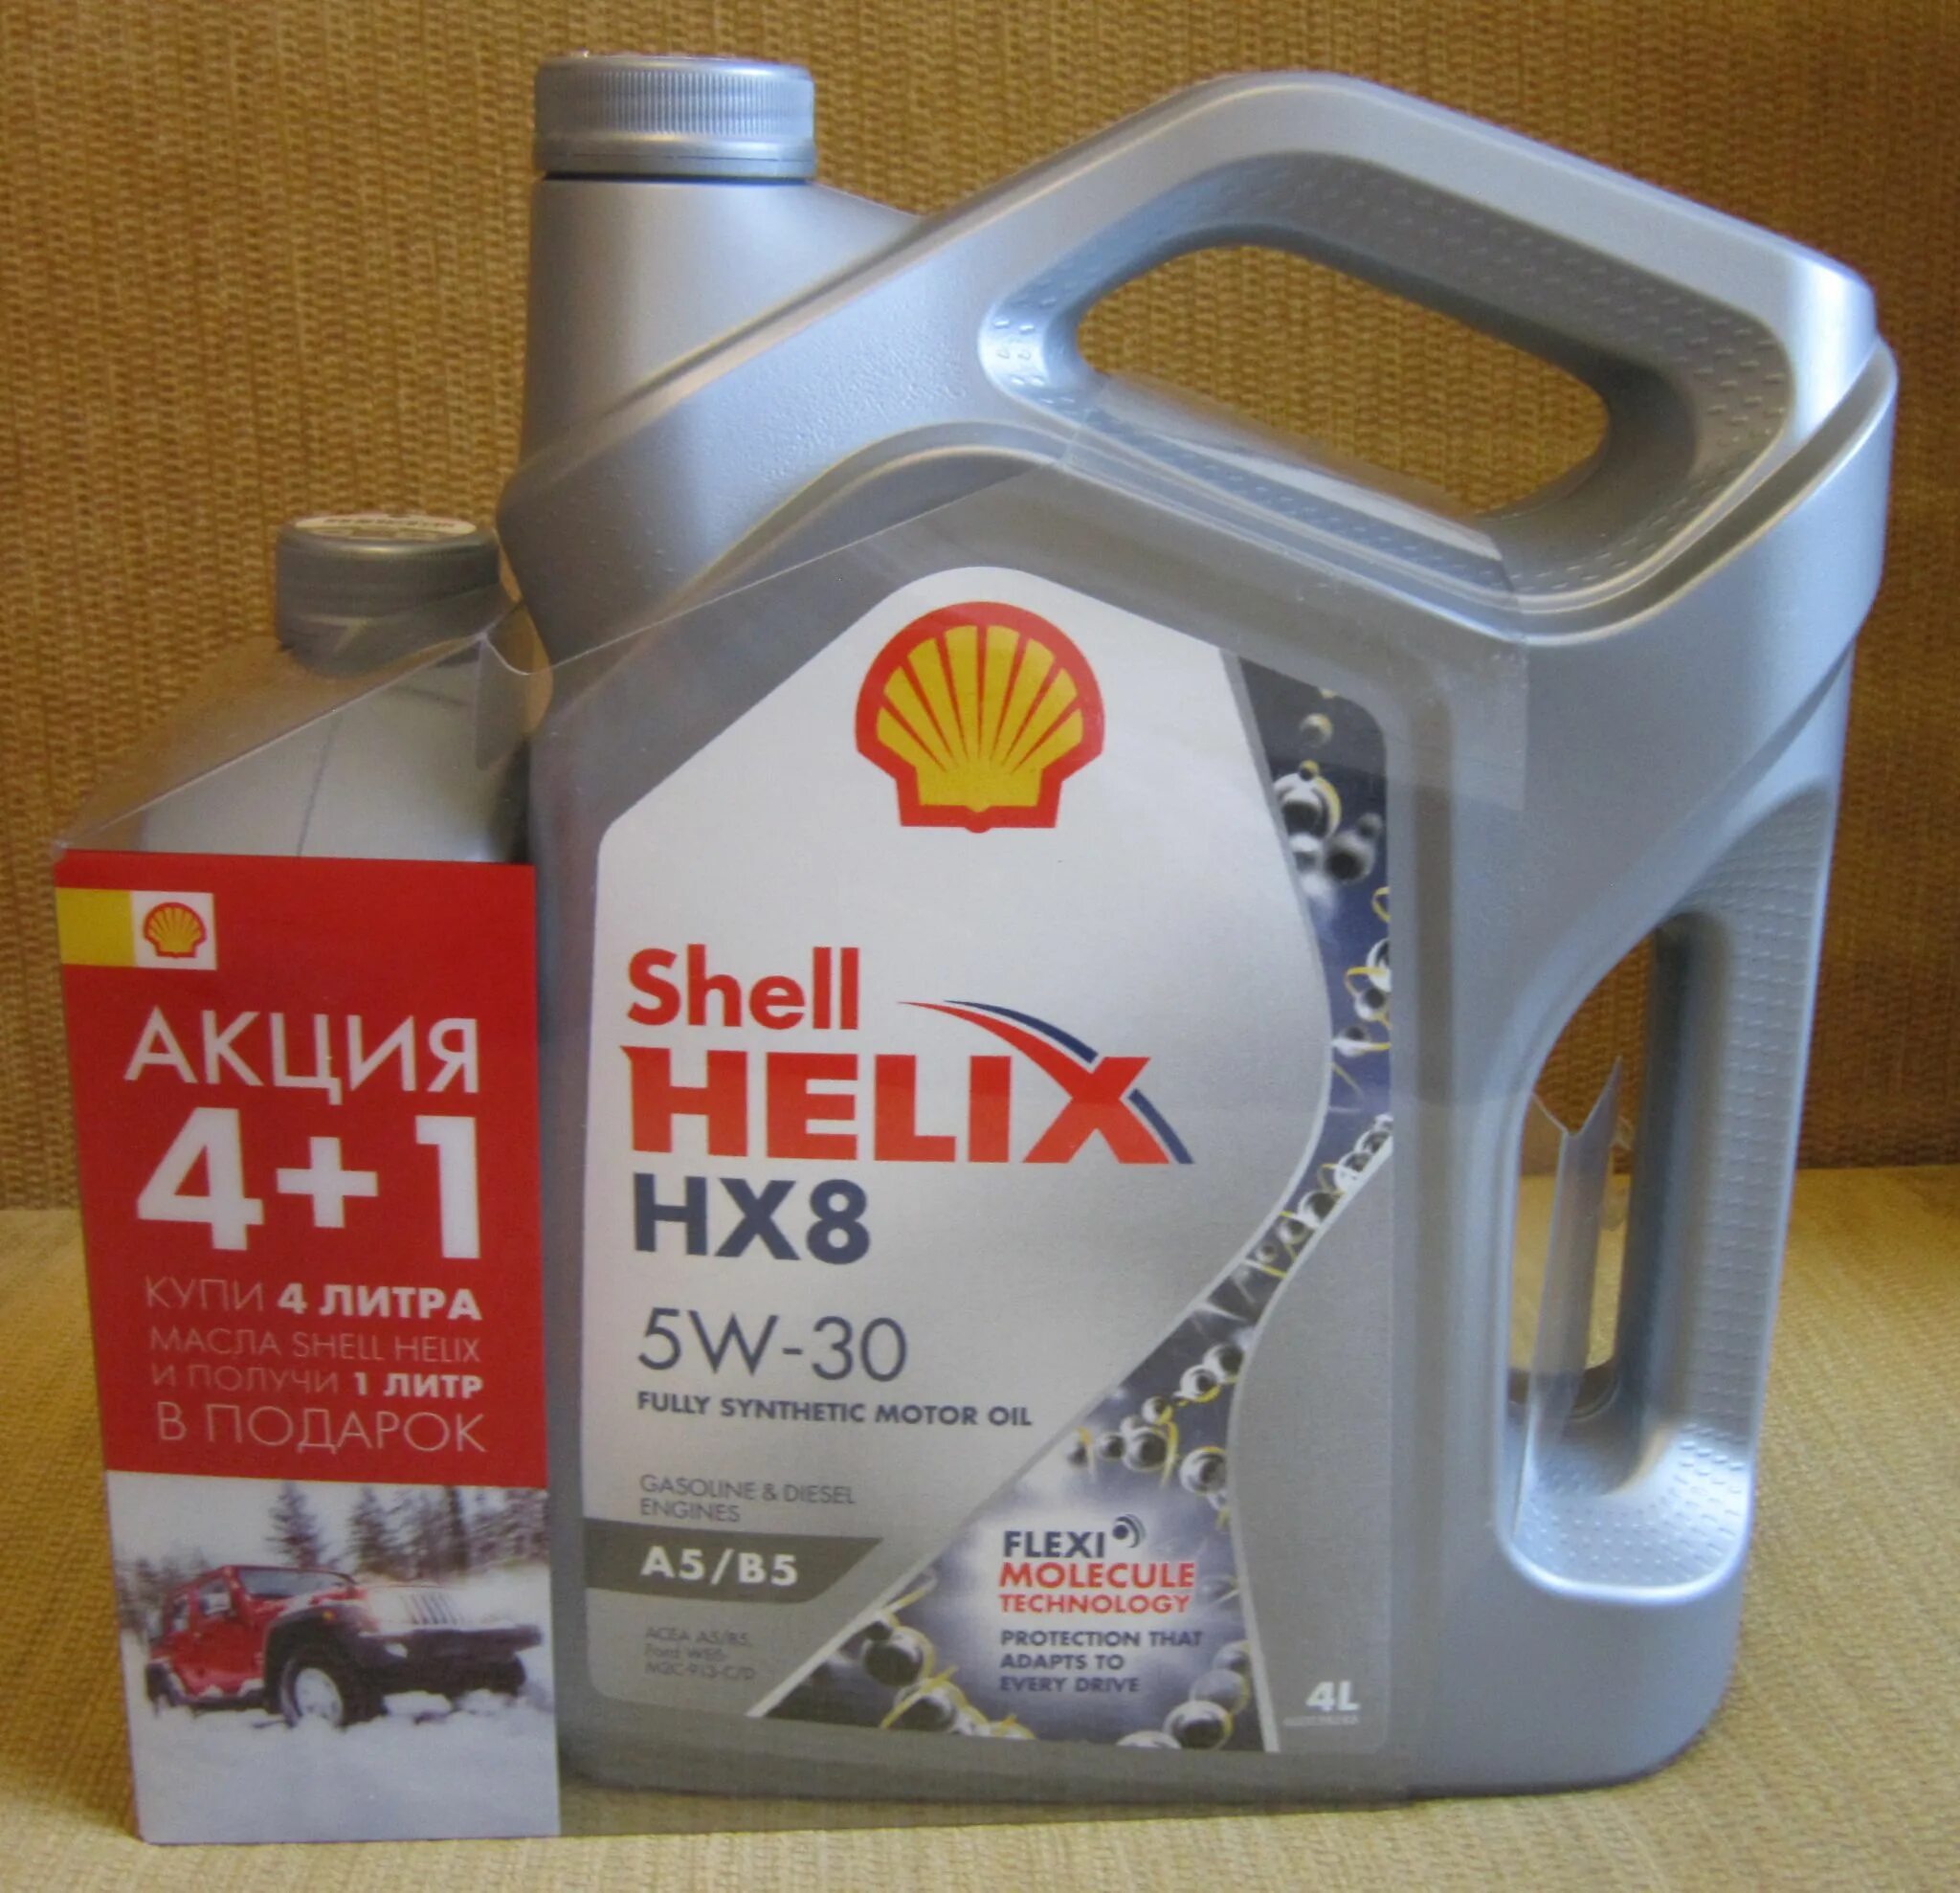 Shell Helix hx8 5w30 a5/b5. Масло моторное Shell Helix hx8 a5b5 5w-30. Shell hx8 5w30 a5/b5. Моторное масло Shell Helix hx8 a5/b5 5w-30 синтетическое 4 л.